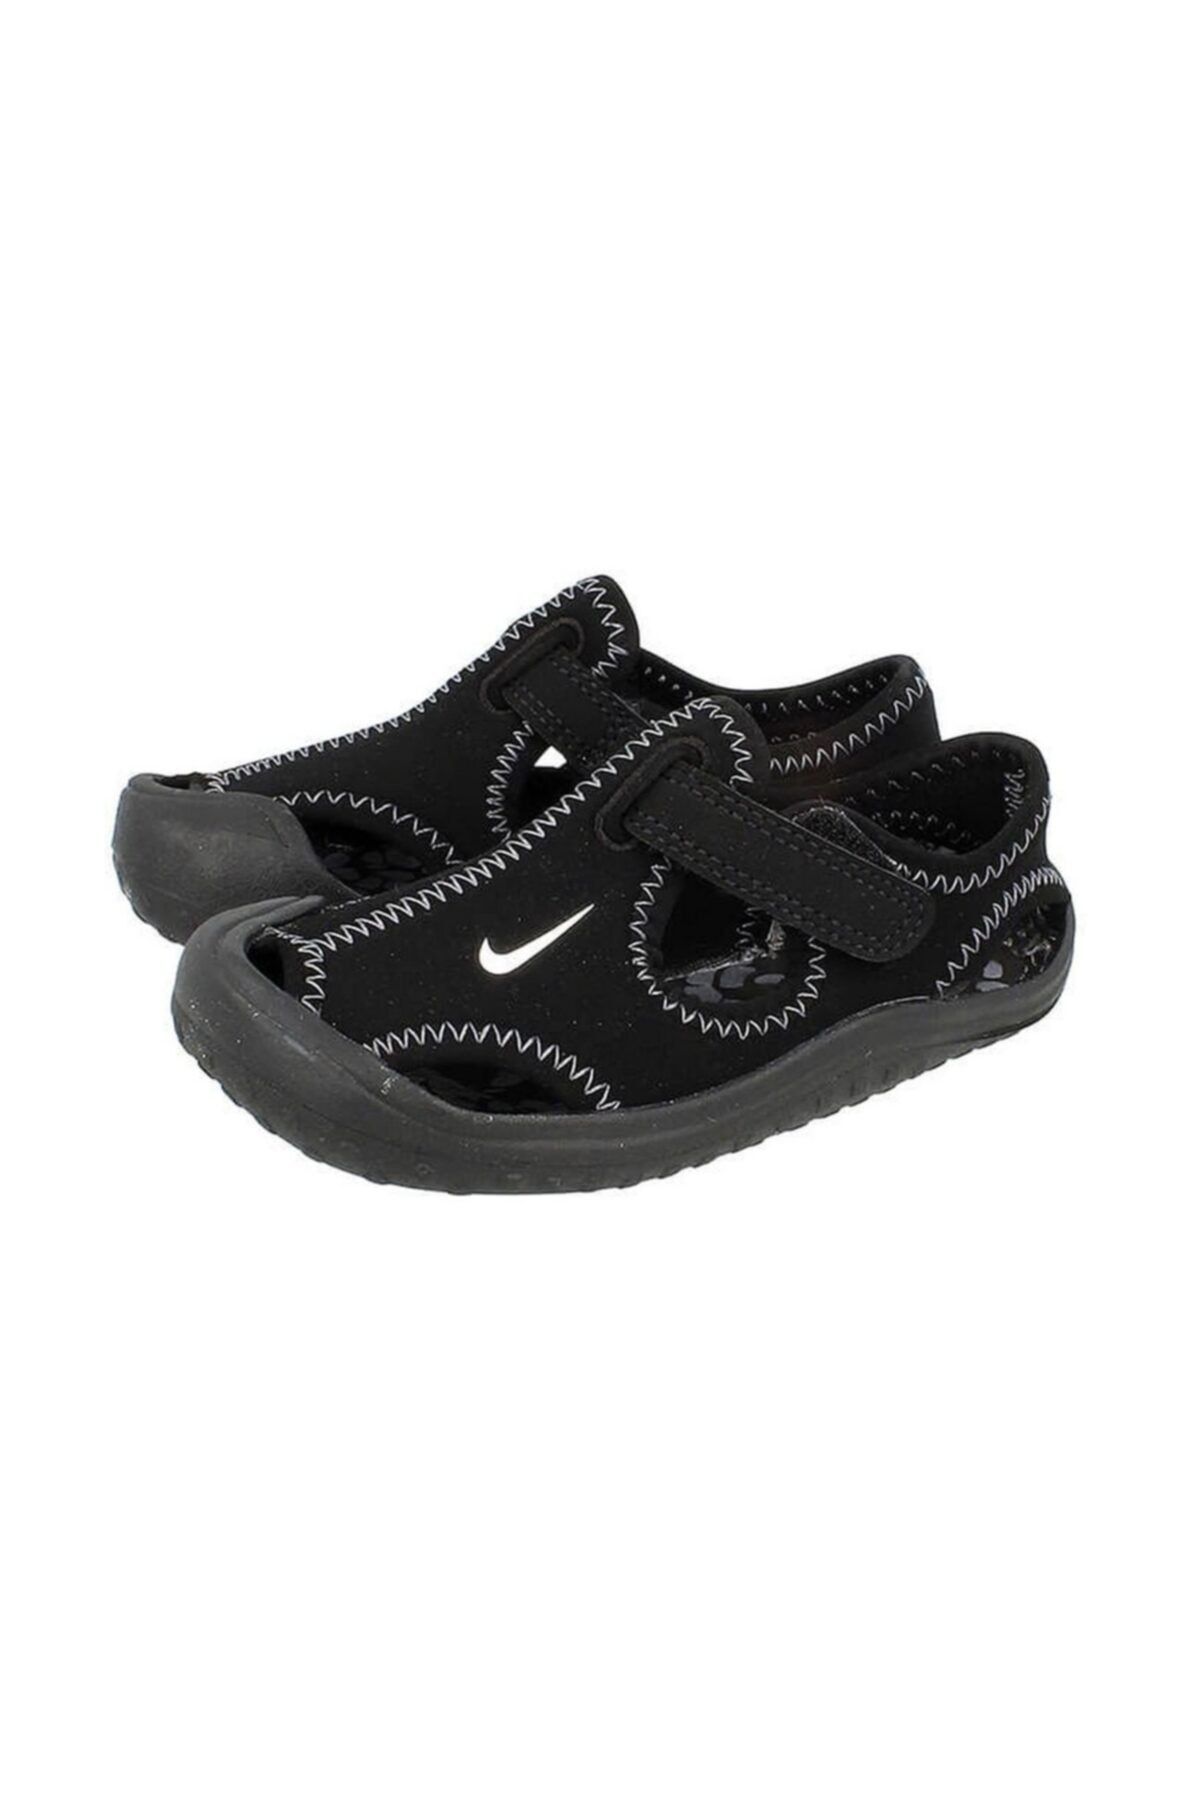 Nike Sunray Protect Td Erkek Sandalet Ayakkabı 903632-001